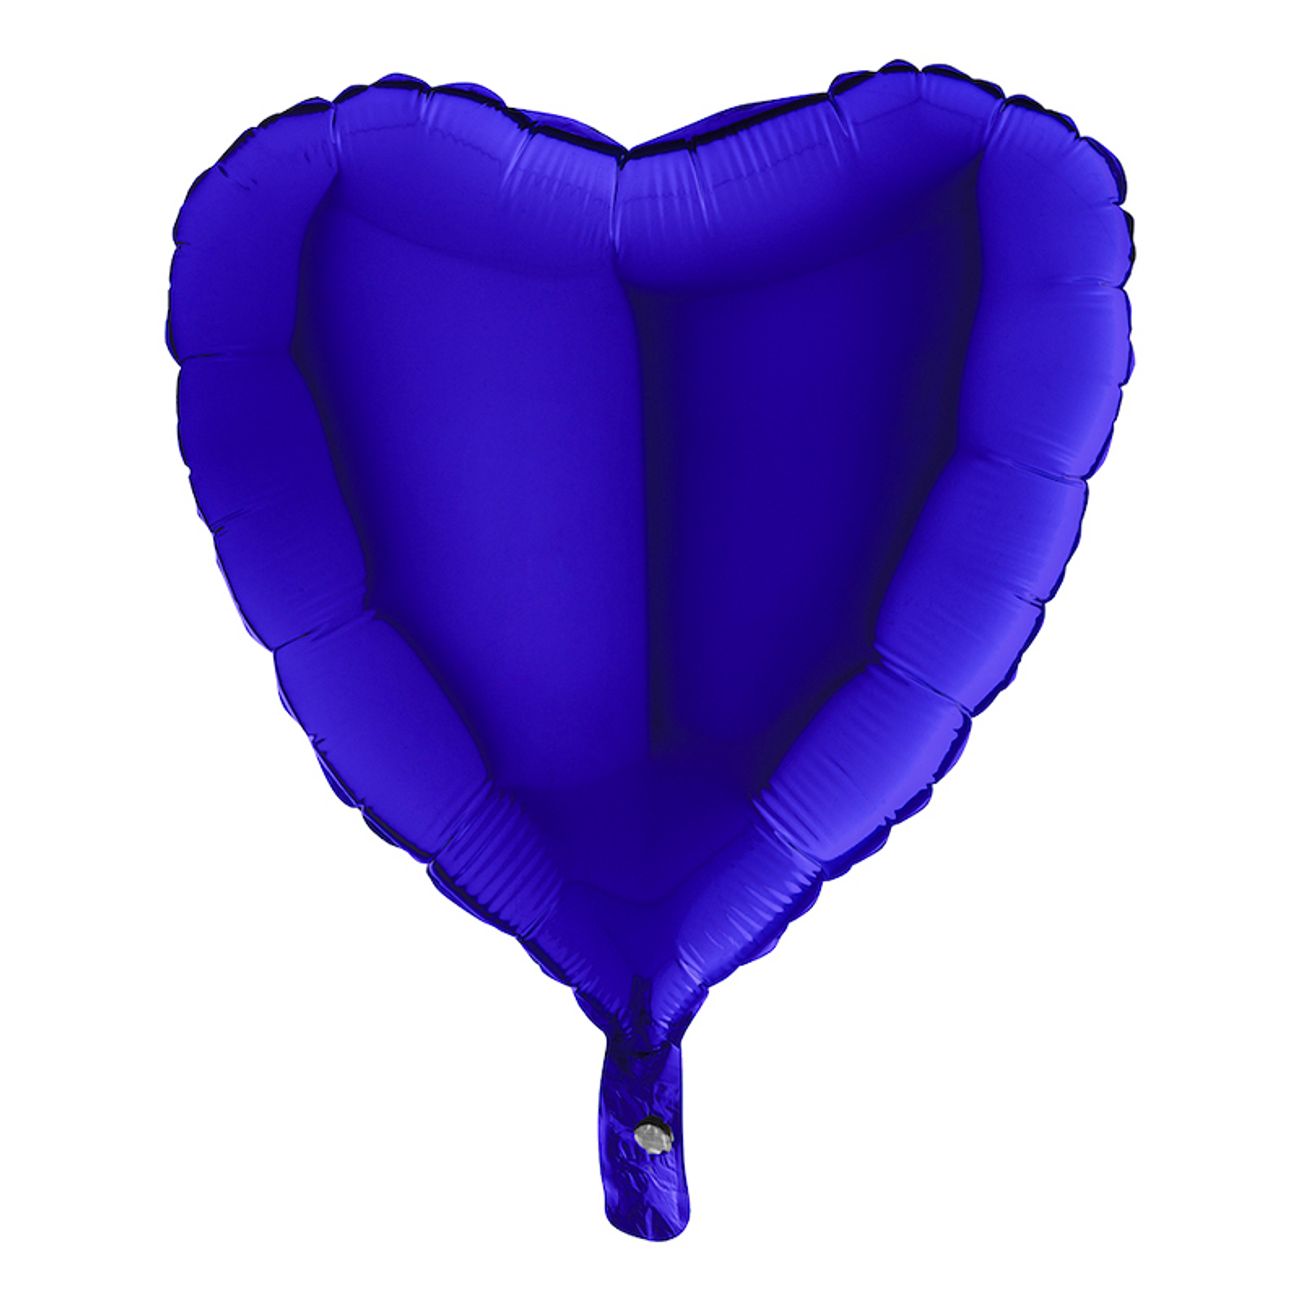 folieballong-hjarta-morkblatt-1